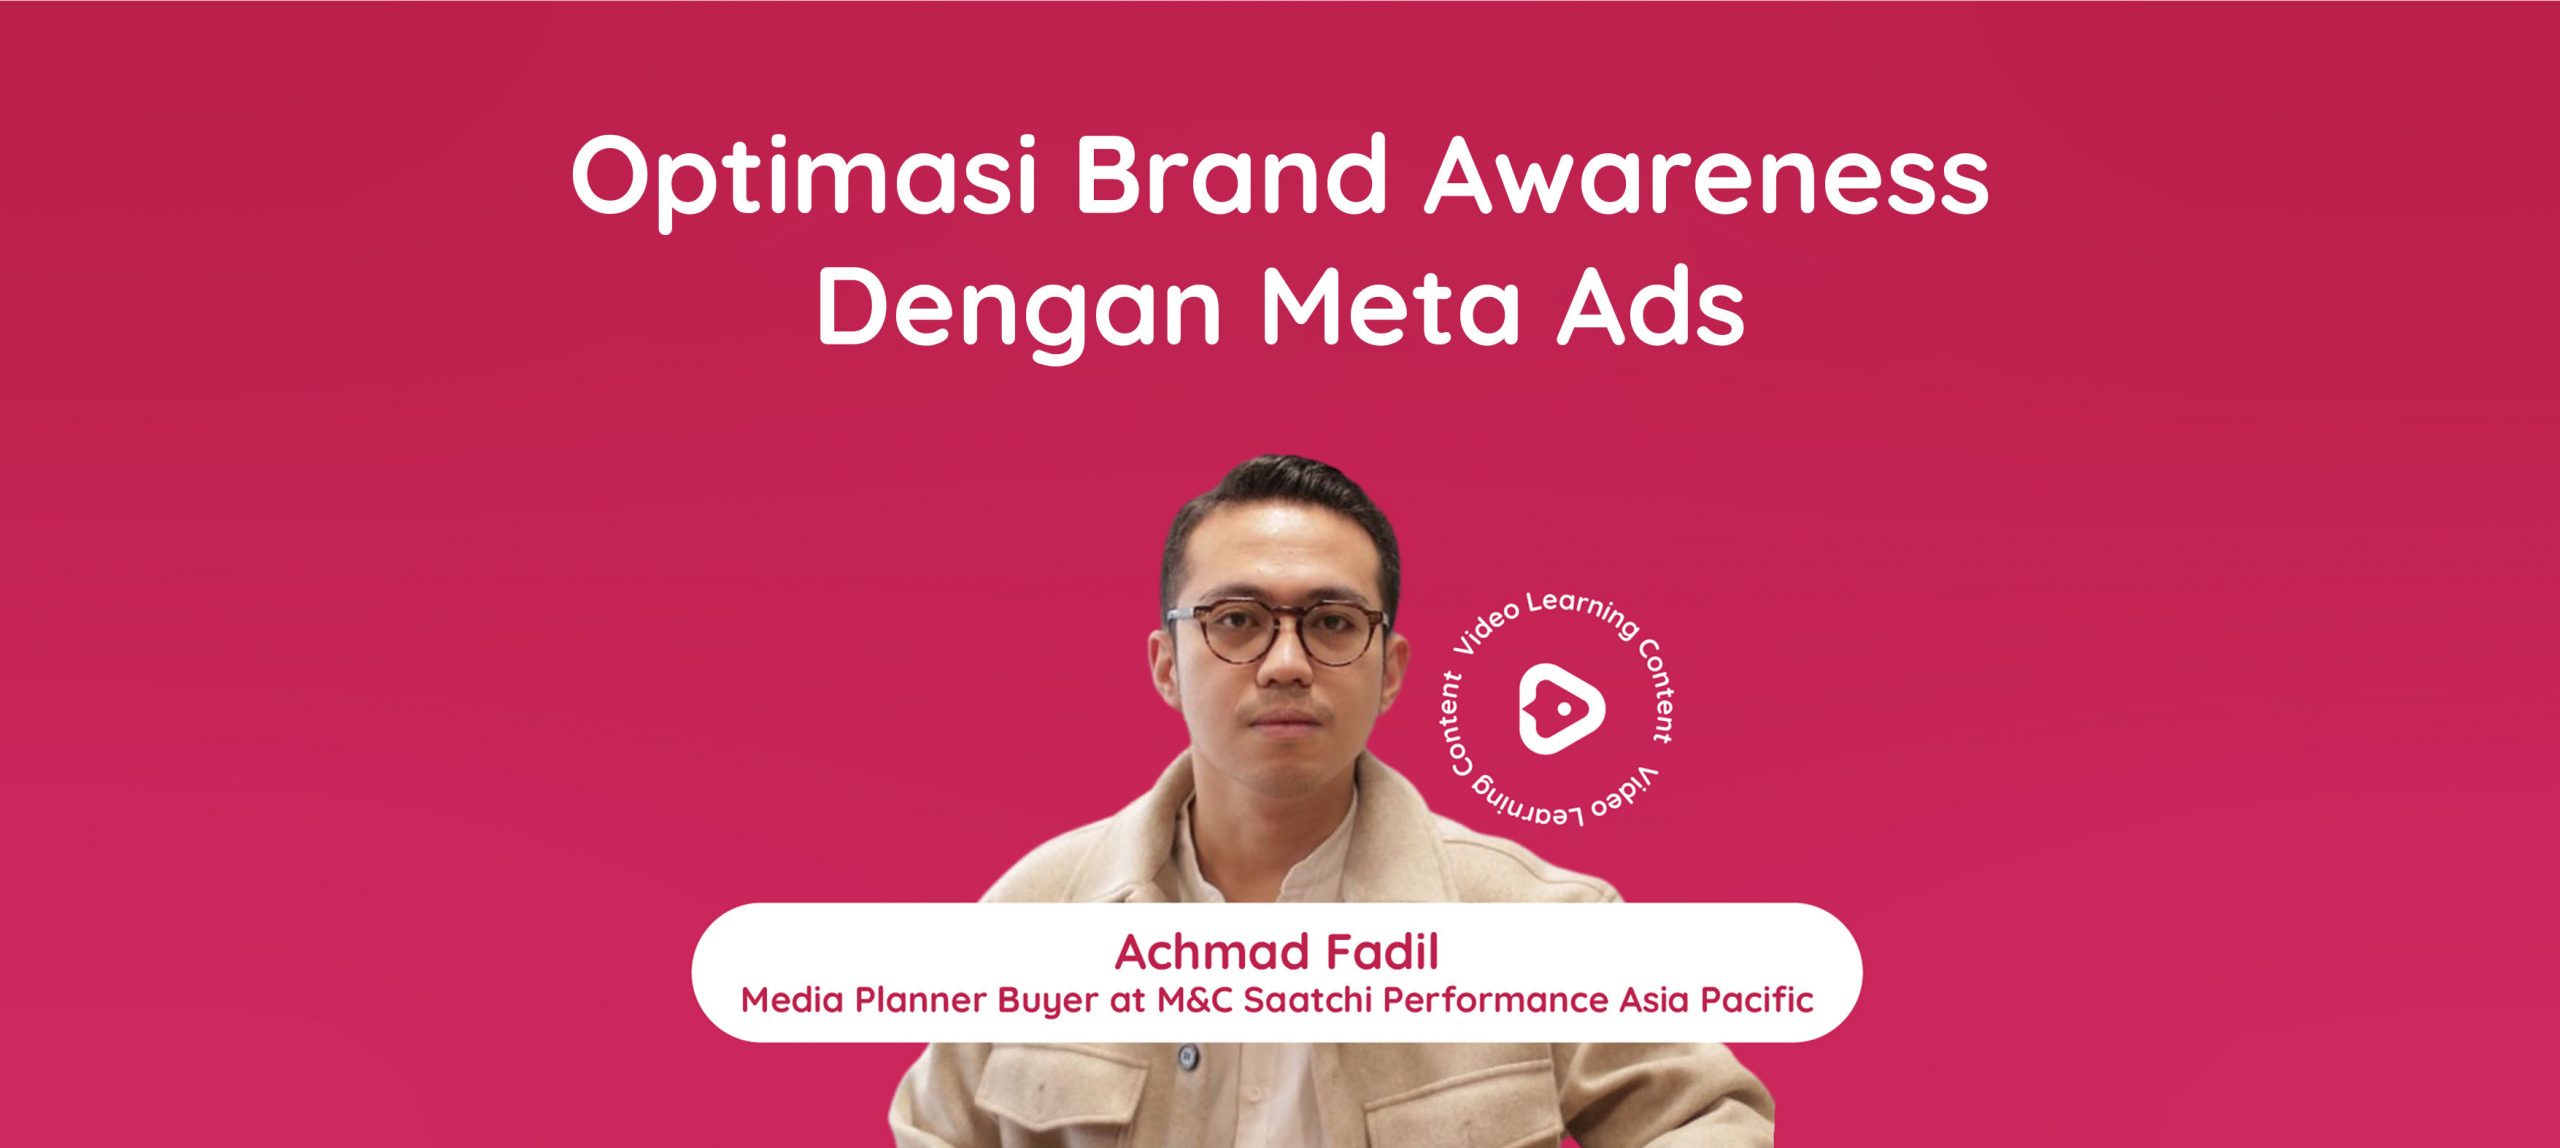 Meta Ads Objective: Brand Awareness